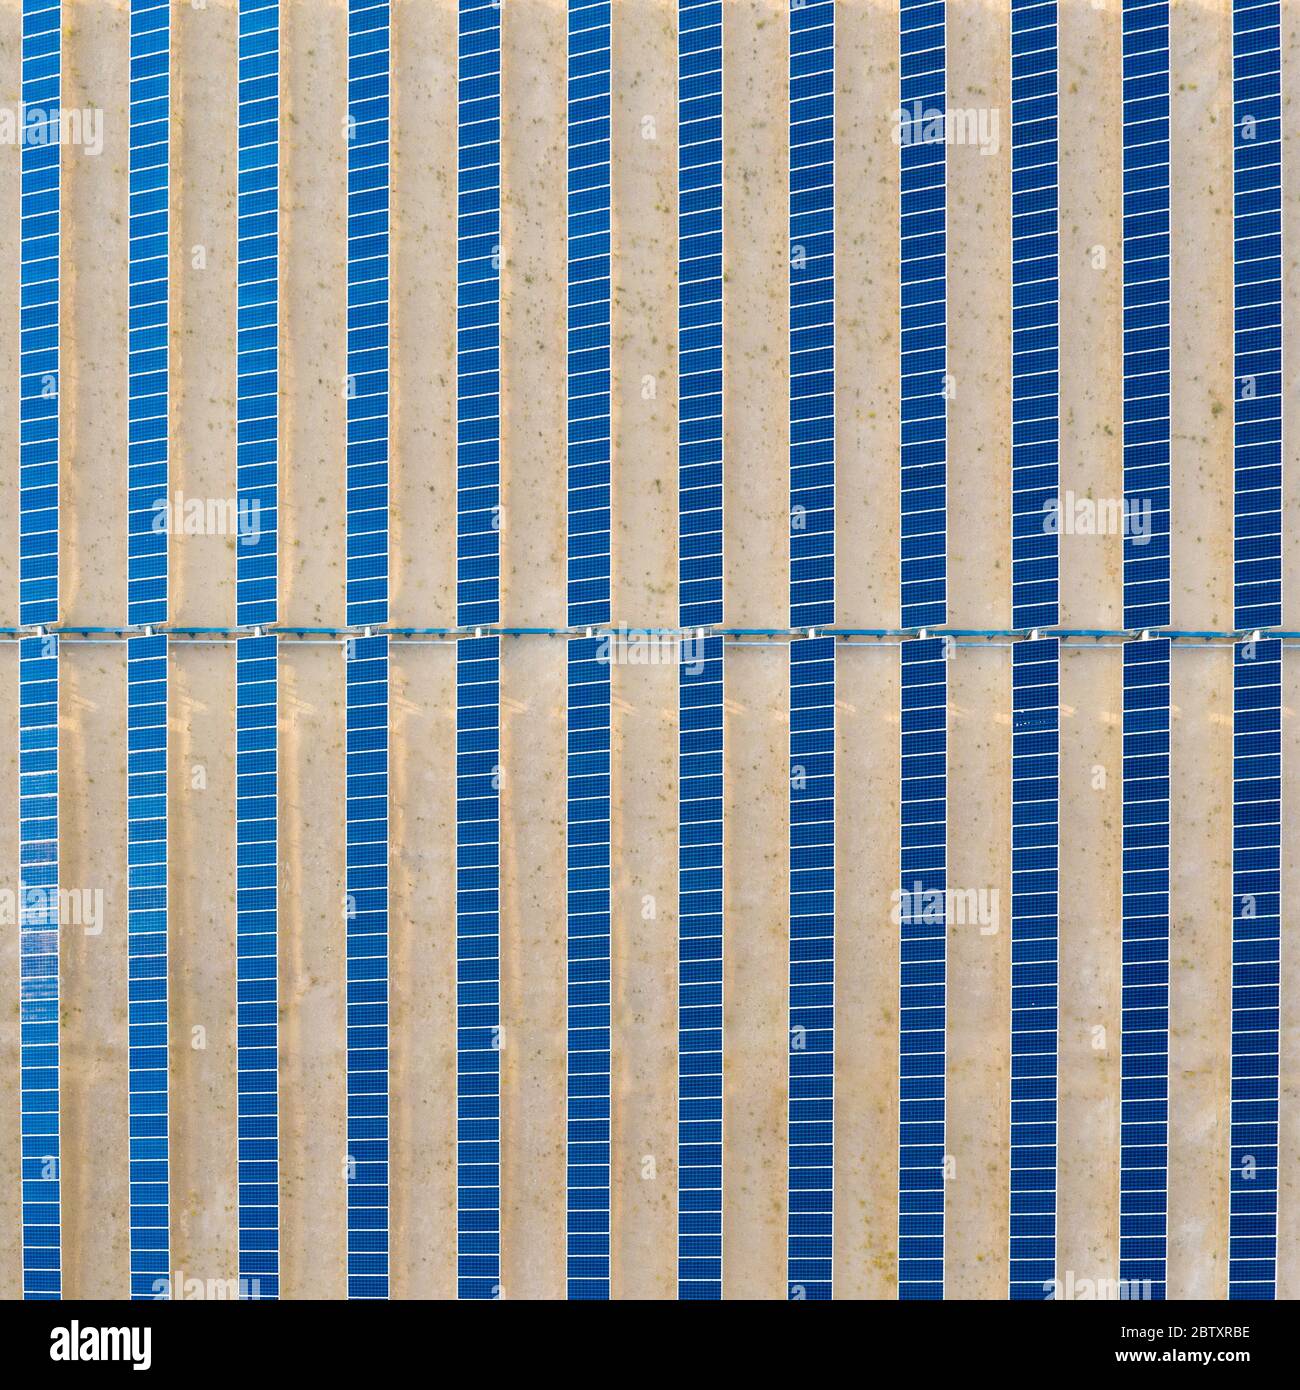 Vue aérienne verticale d'une ferme de panneaux solaires photovoltaïques générant une énergie renouvelable durable dans une centrale électrique désertique. Banque D'Images